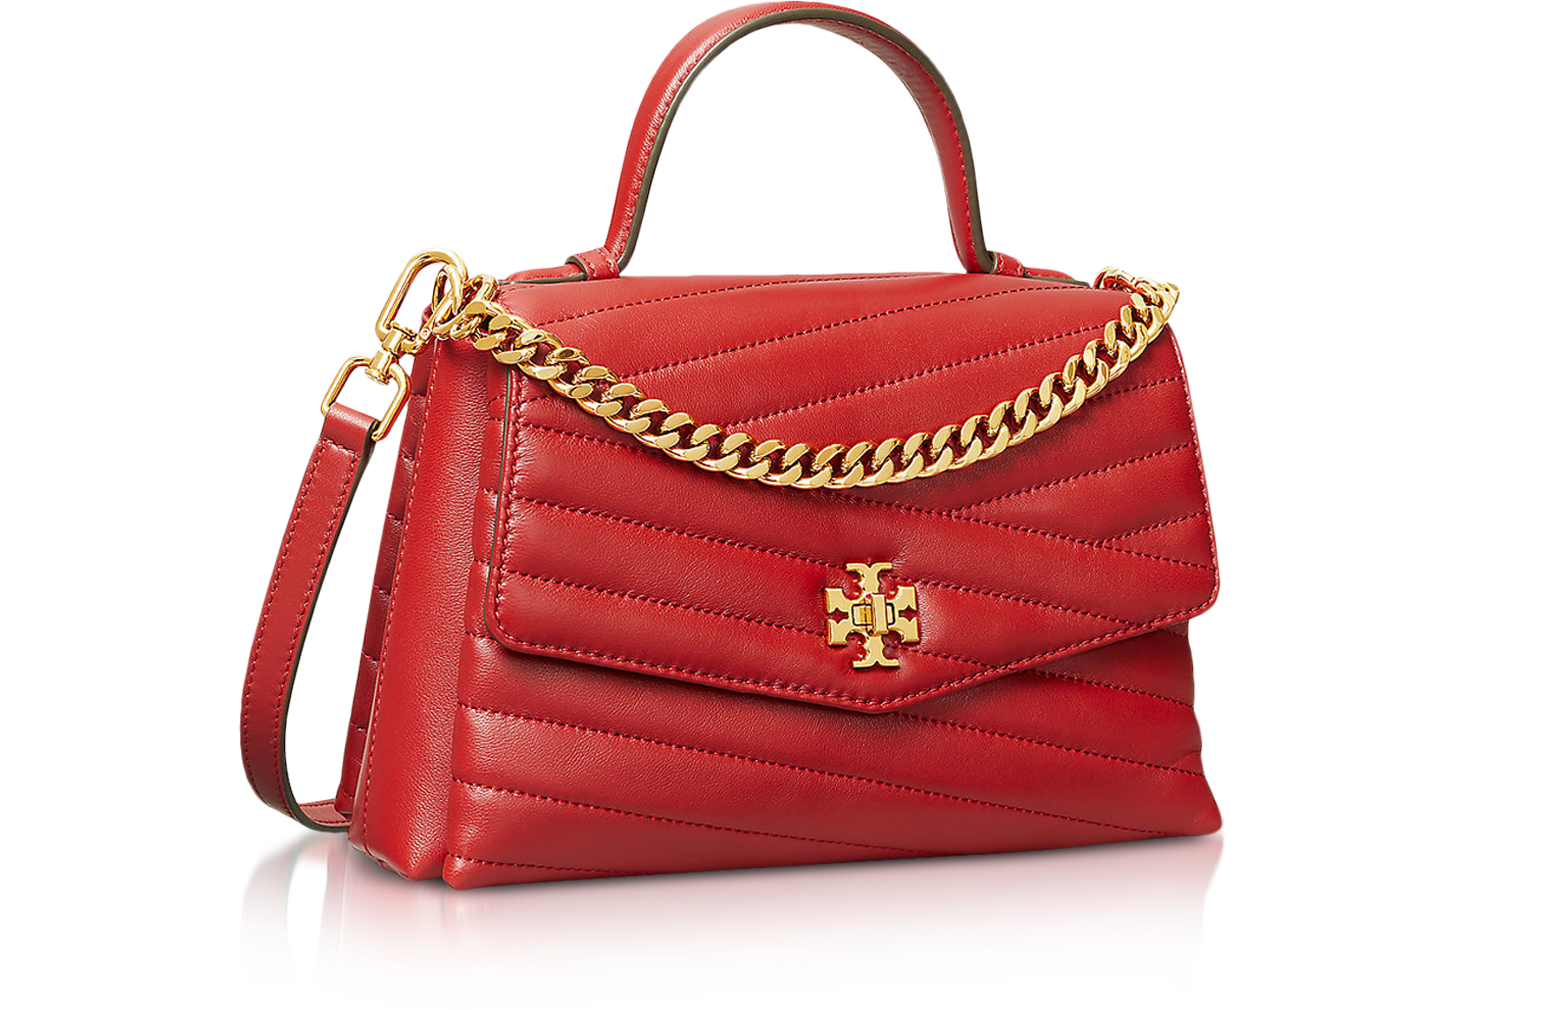  Handbags & Shoulder Bags - Tory Burch / Handbags & Shoulder  Bags / Luggage & Tra: Fashion